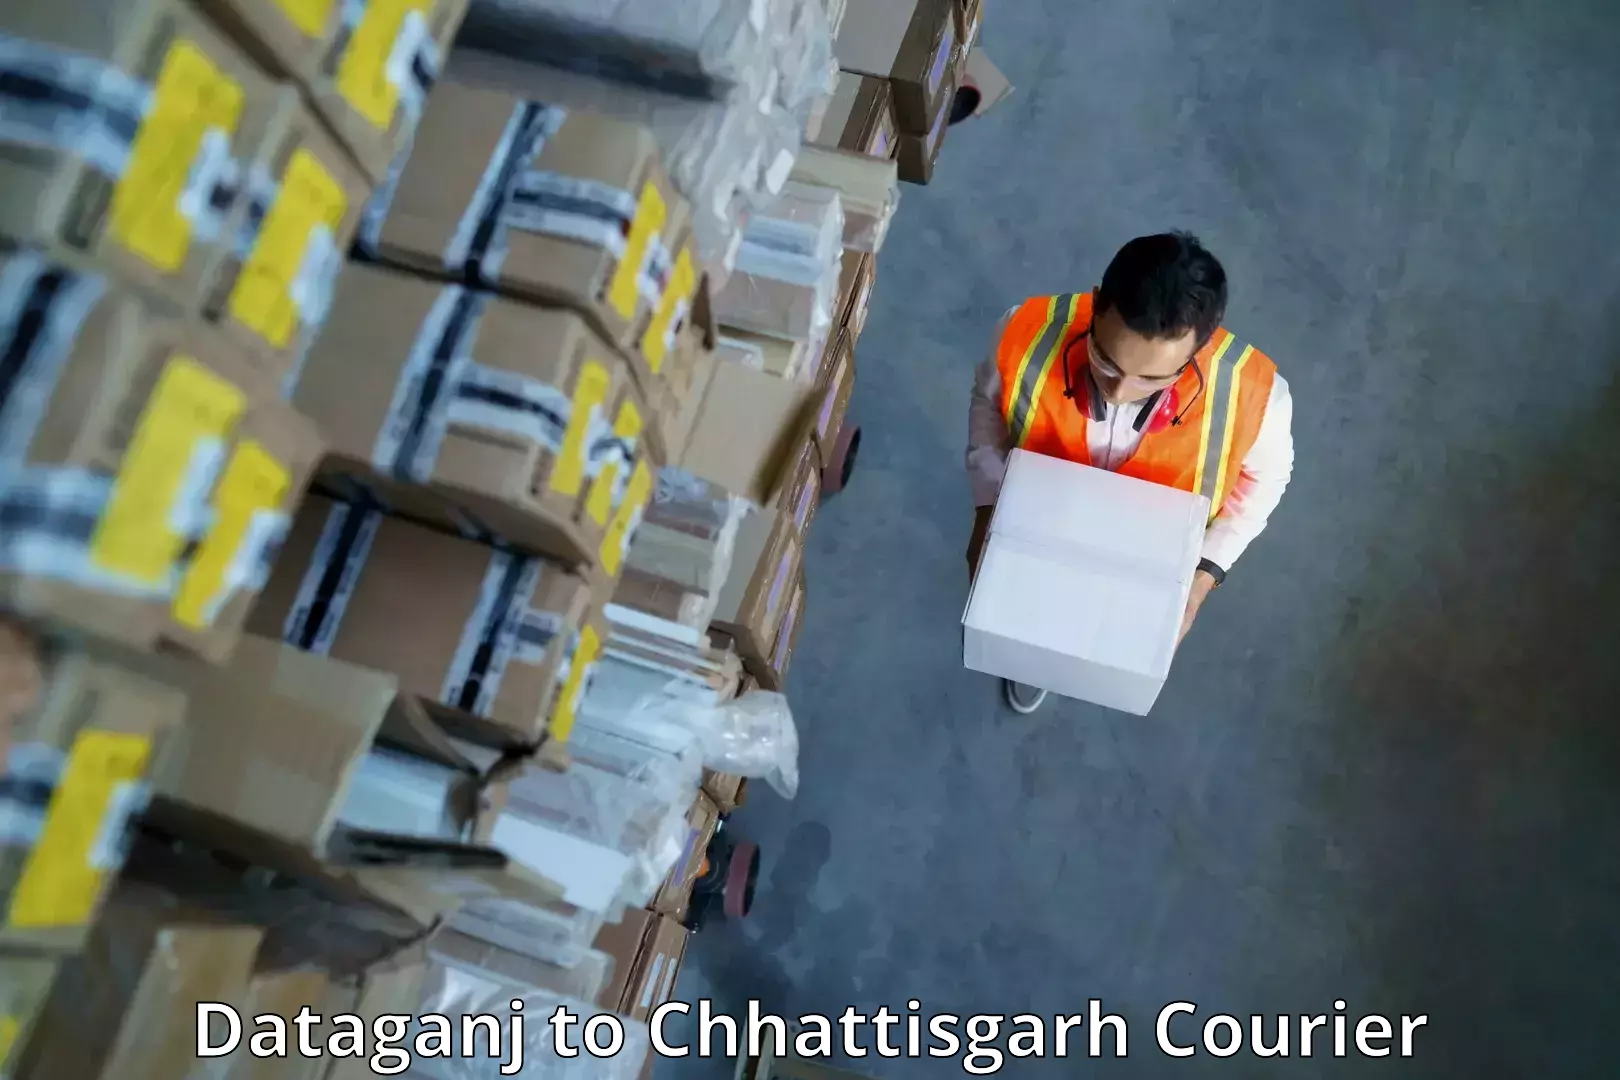 Next-day freight services Dataganj to Chhattisgarh